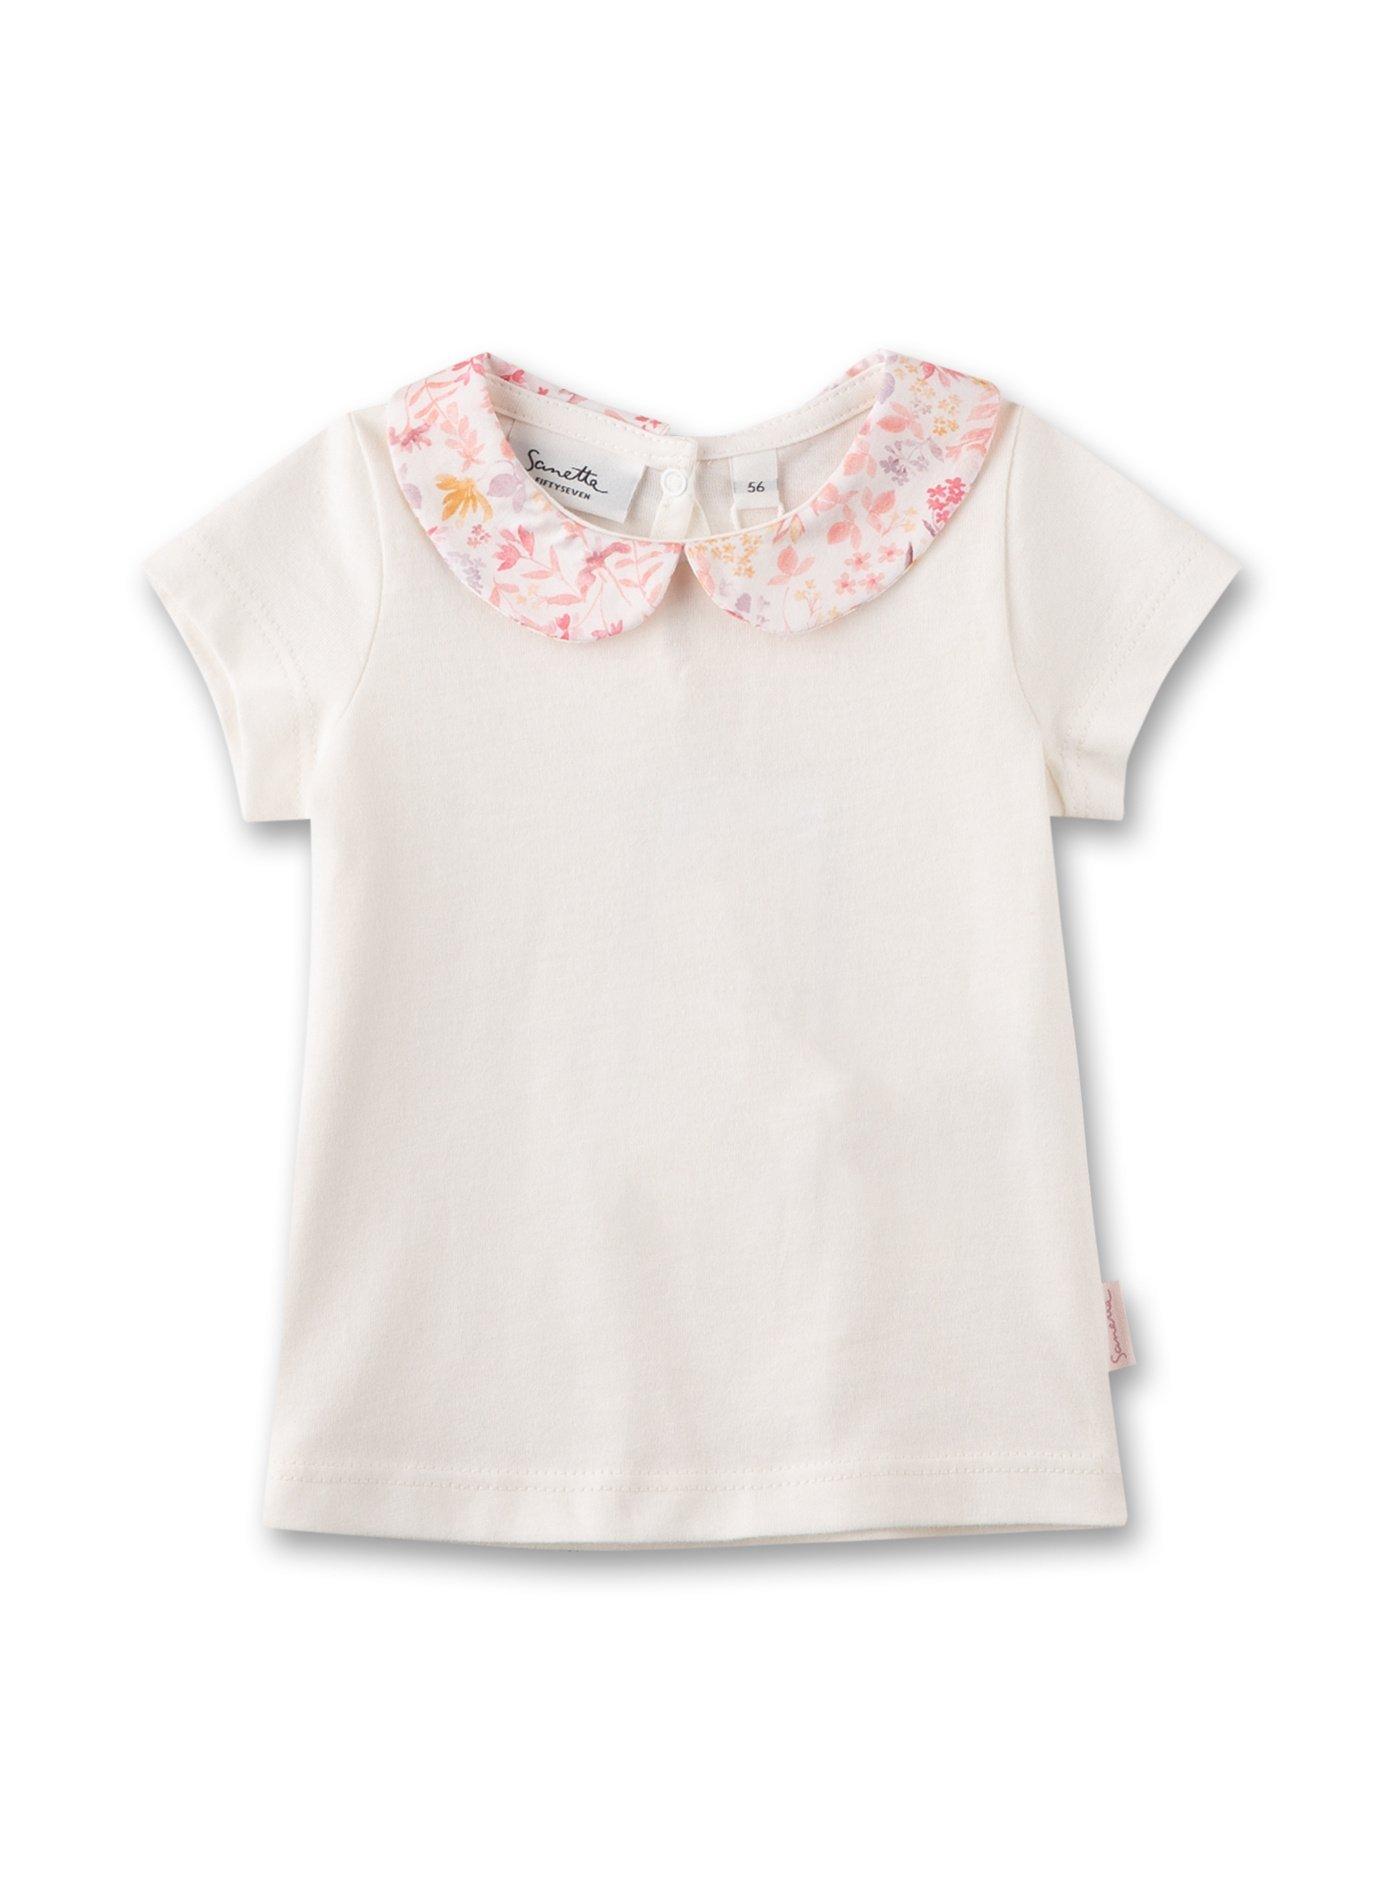 Baby Mädchen T-shirt Off-white Mit Bubi-kragen Unisex Weiss 56 von Sanetta Fiftyseven